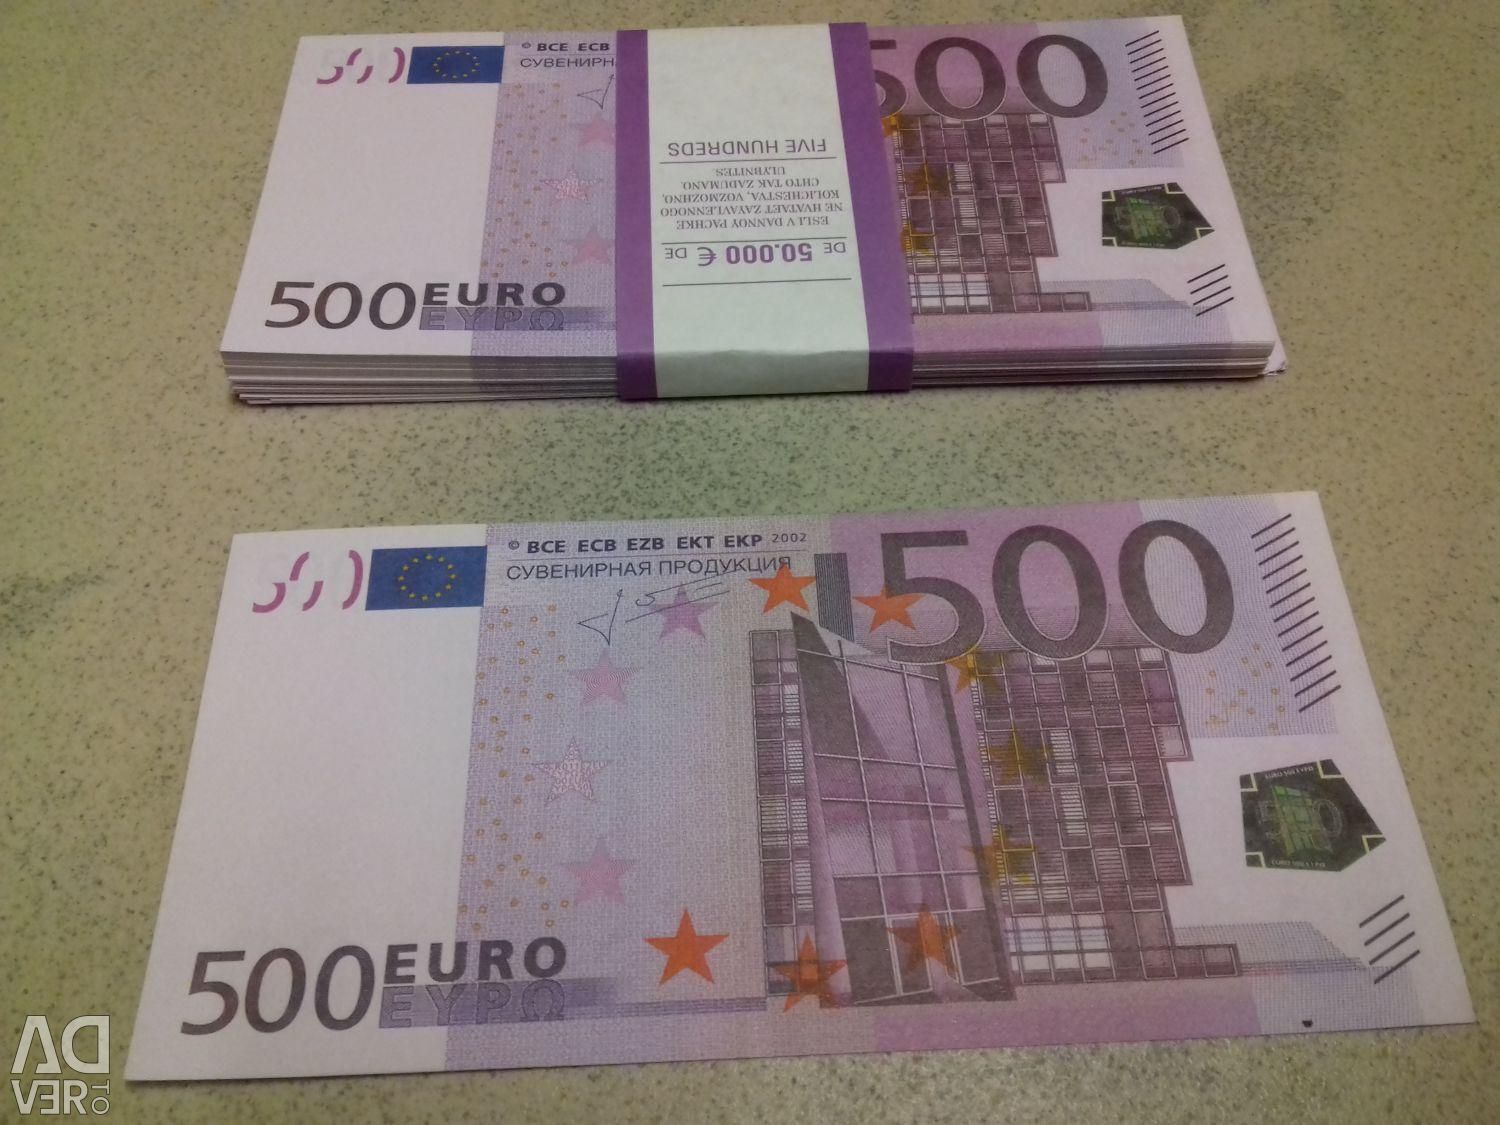 Сколько можно евро в банке. Пачка купюр 500 евро. 500 Евро банка приколов. 500 Евро в рублях. 500 Евро купюра сувенирная продукция.